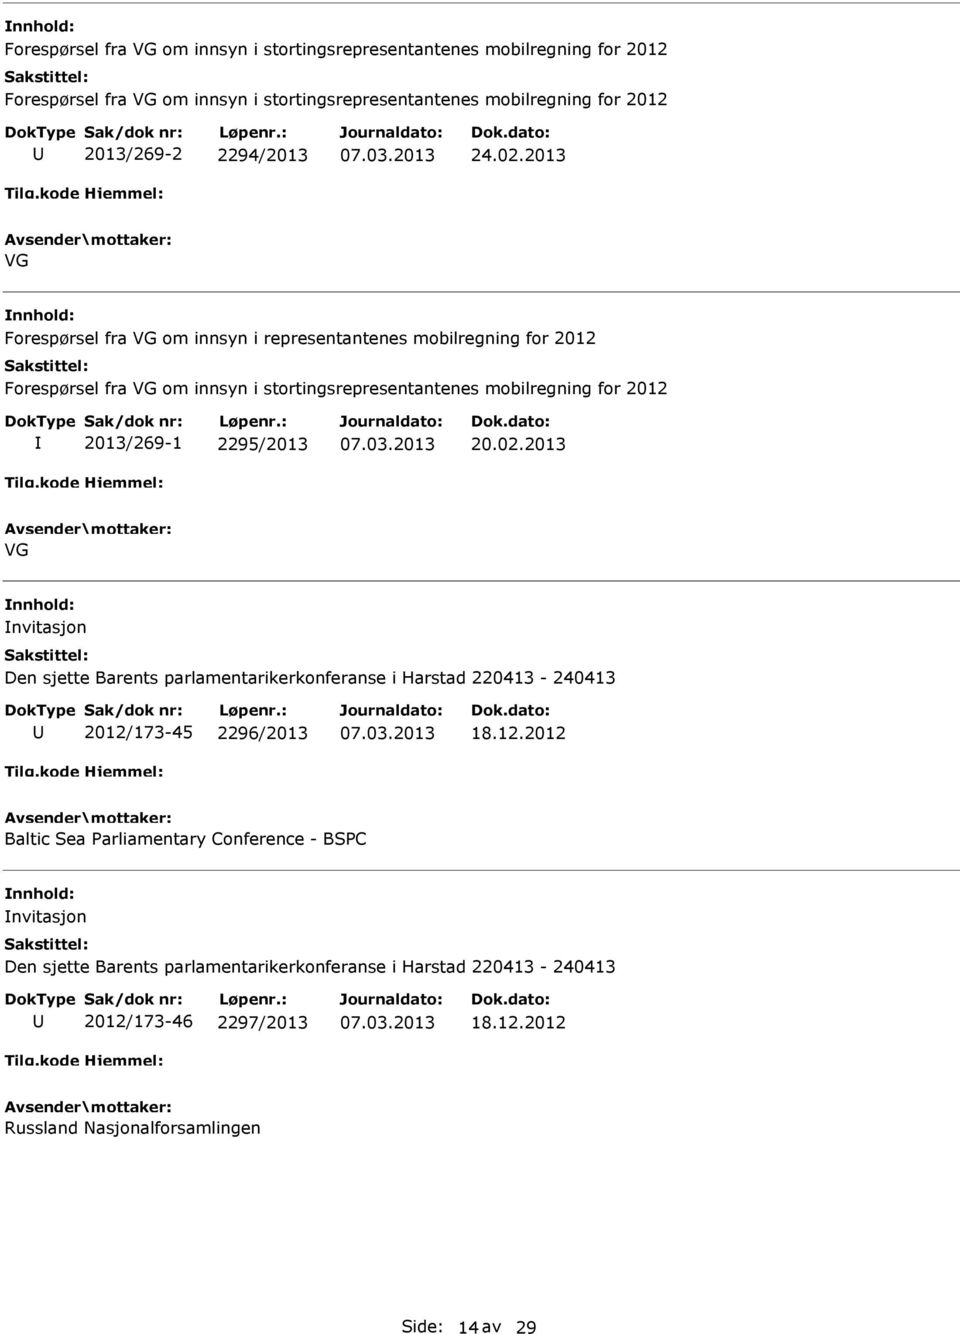 2013 VG Forespørsel fra VG om innsyn i representantenes mobilregning for 2012 Forespørsel fra VG om innsyn i